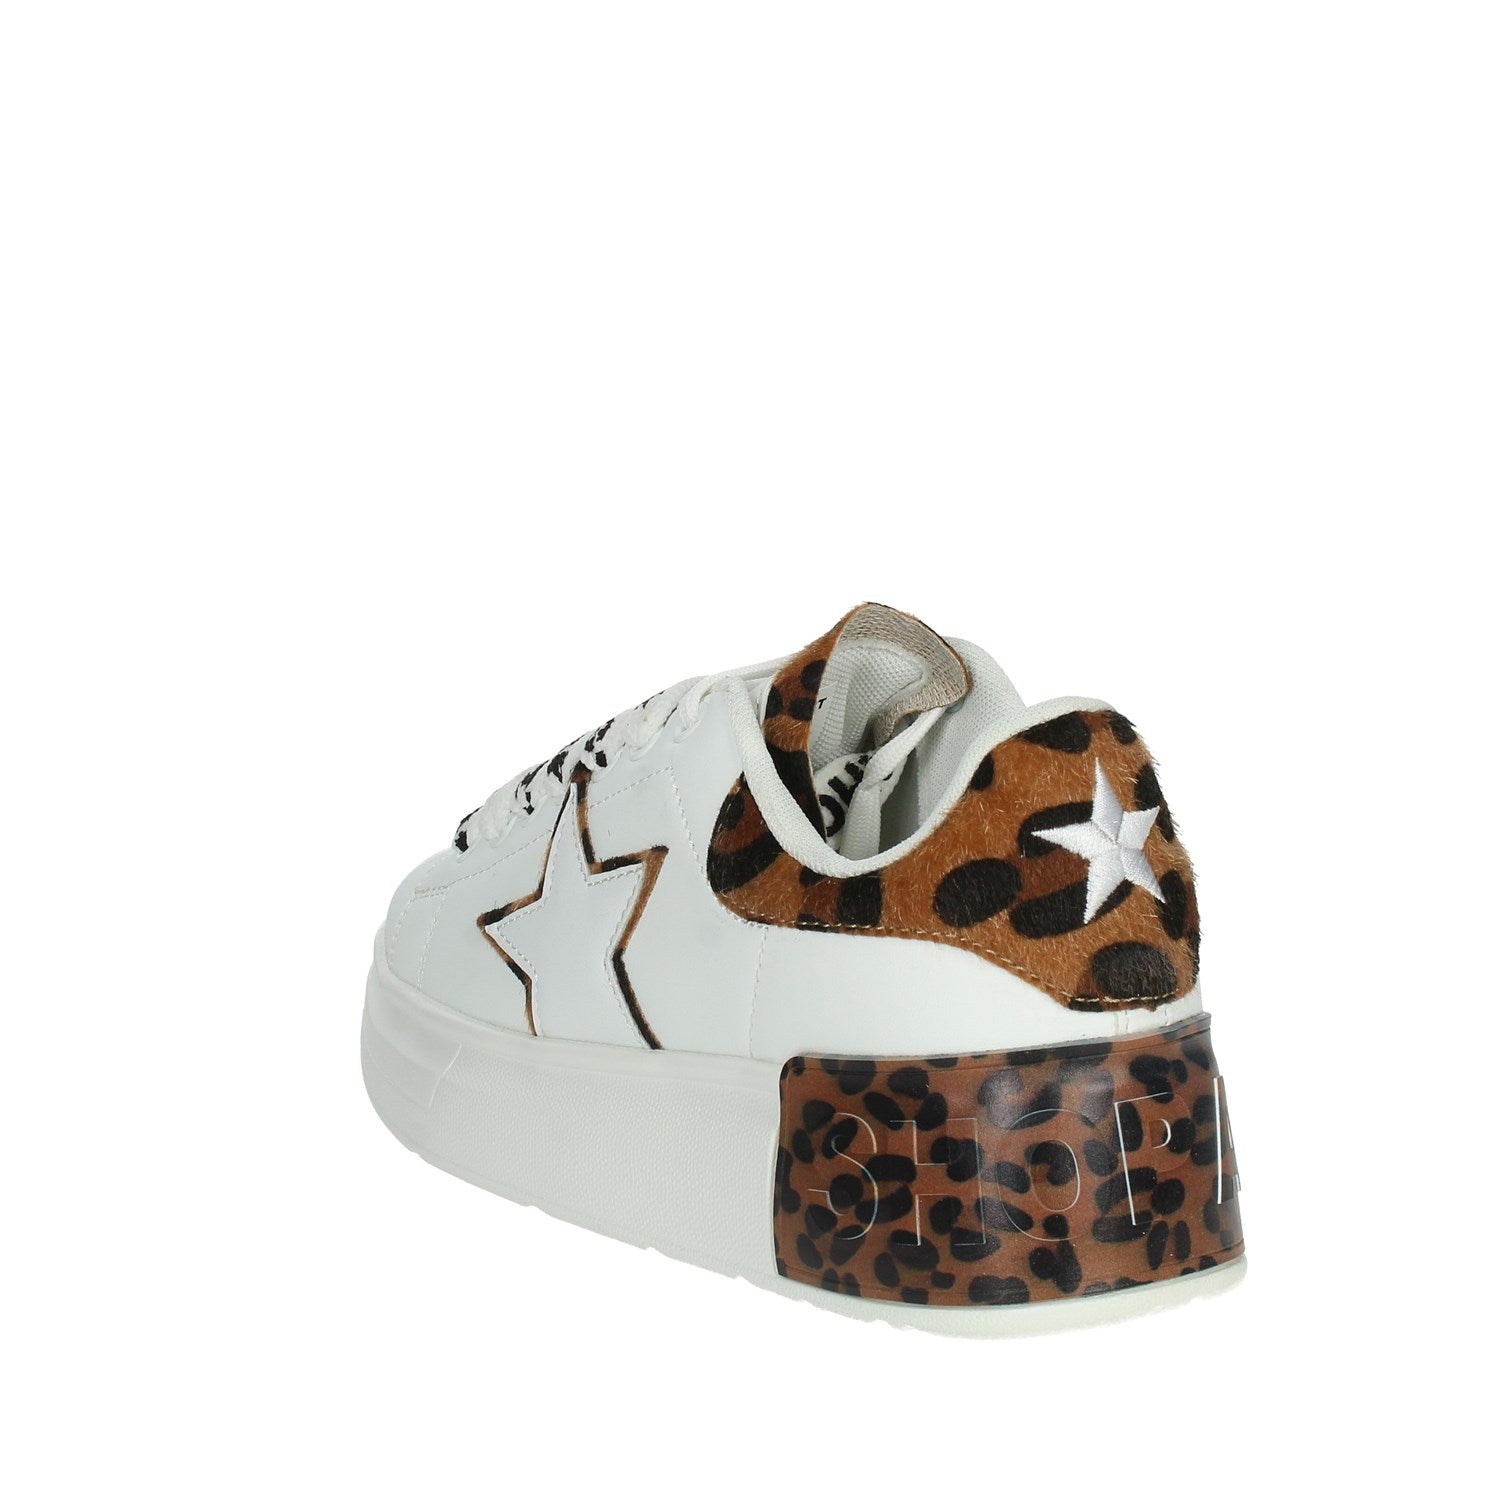 Shop art donna scarpa sneakers kim SASF230517